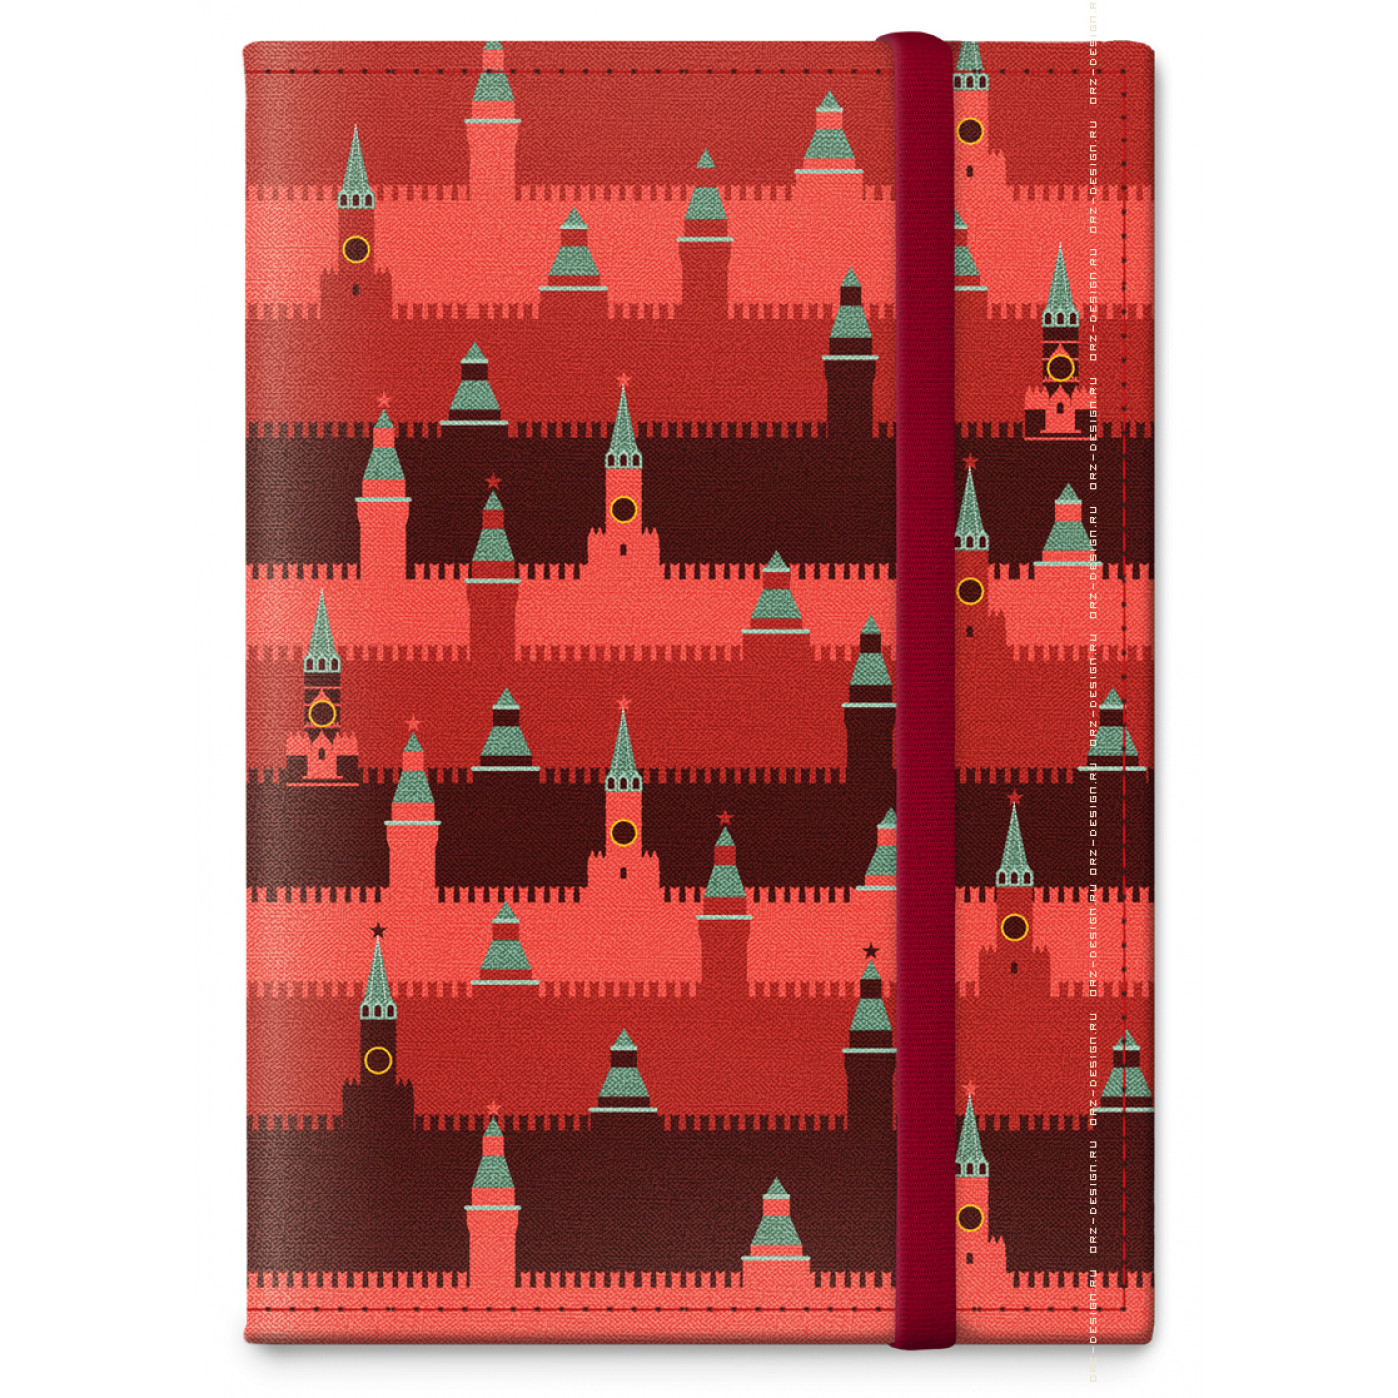 Обложка на паспорт  Кремль Башни  (текстиль)